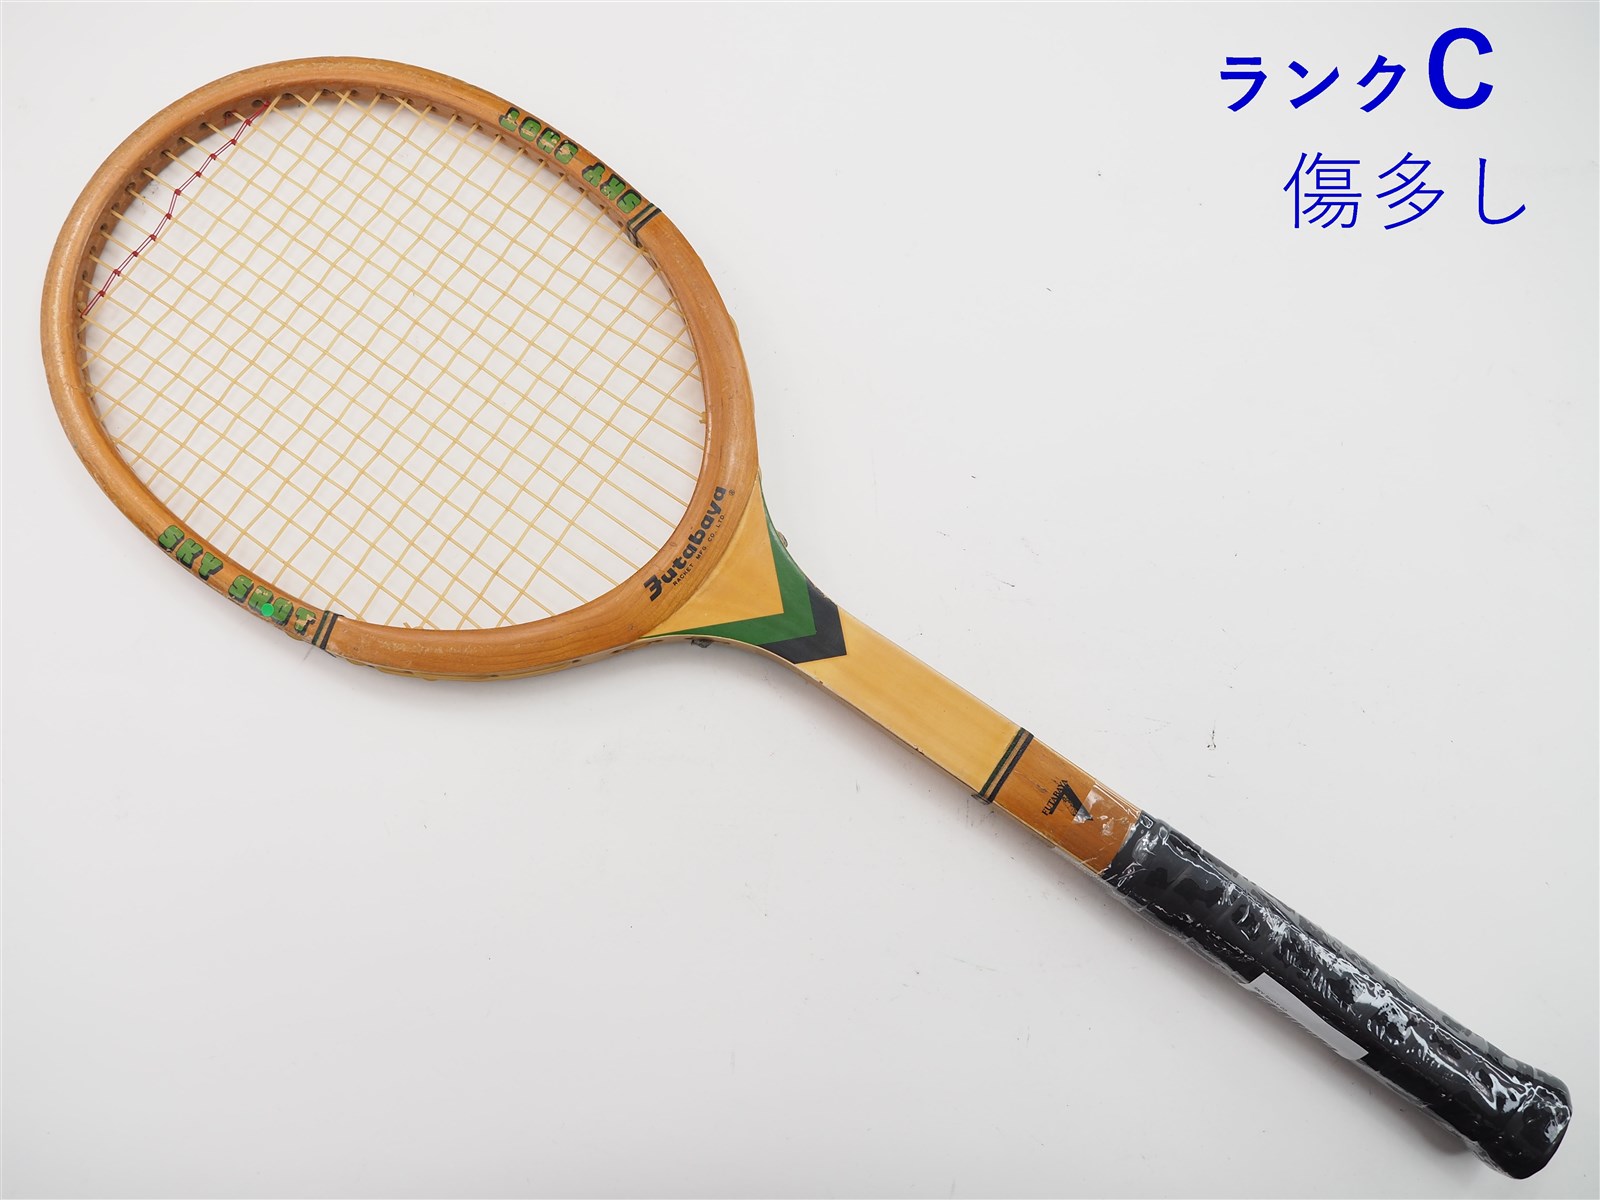 中古】フタバヤ スカイ ショットFUTABAYA SKY SHOT(G2)【中古 テニスラケット】の通販・販売| その他| テニスサポートセンターへ